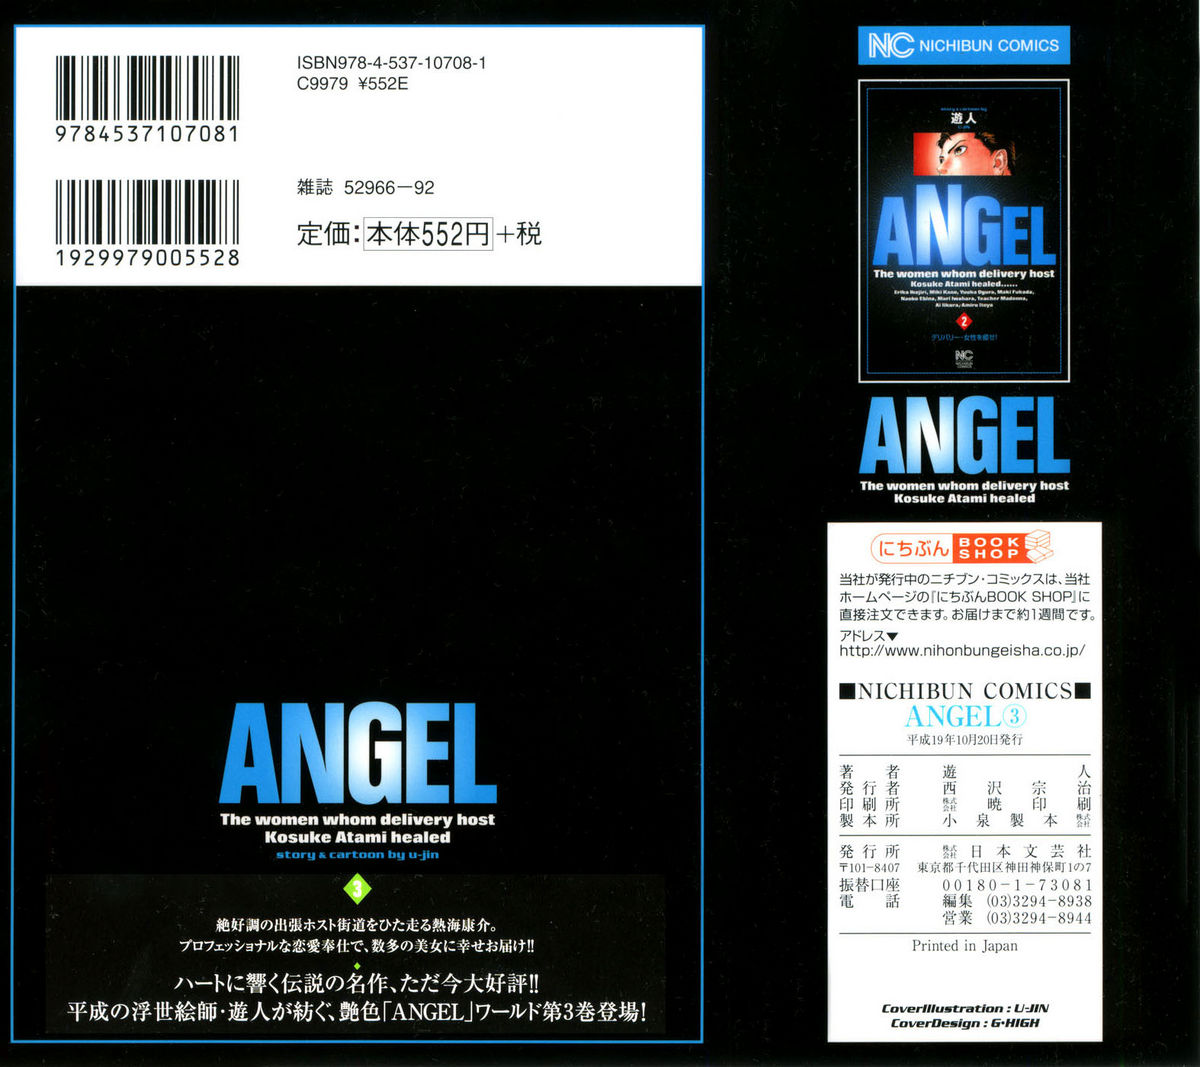 [U-Jin] Angel - The Women Whom Delivery Host Kosuke Atami Healed 03 